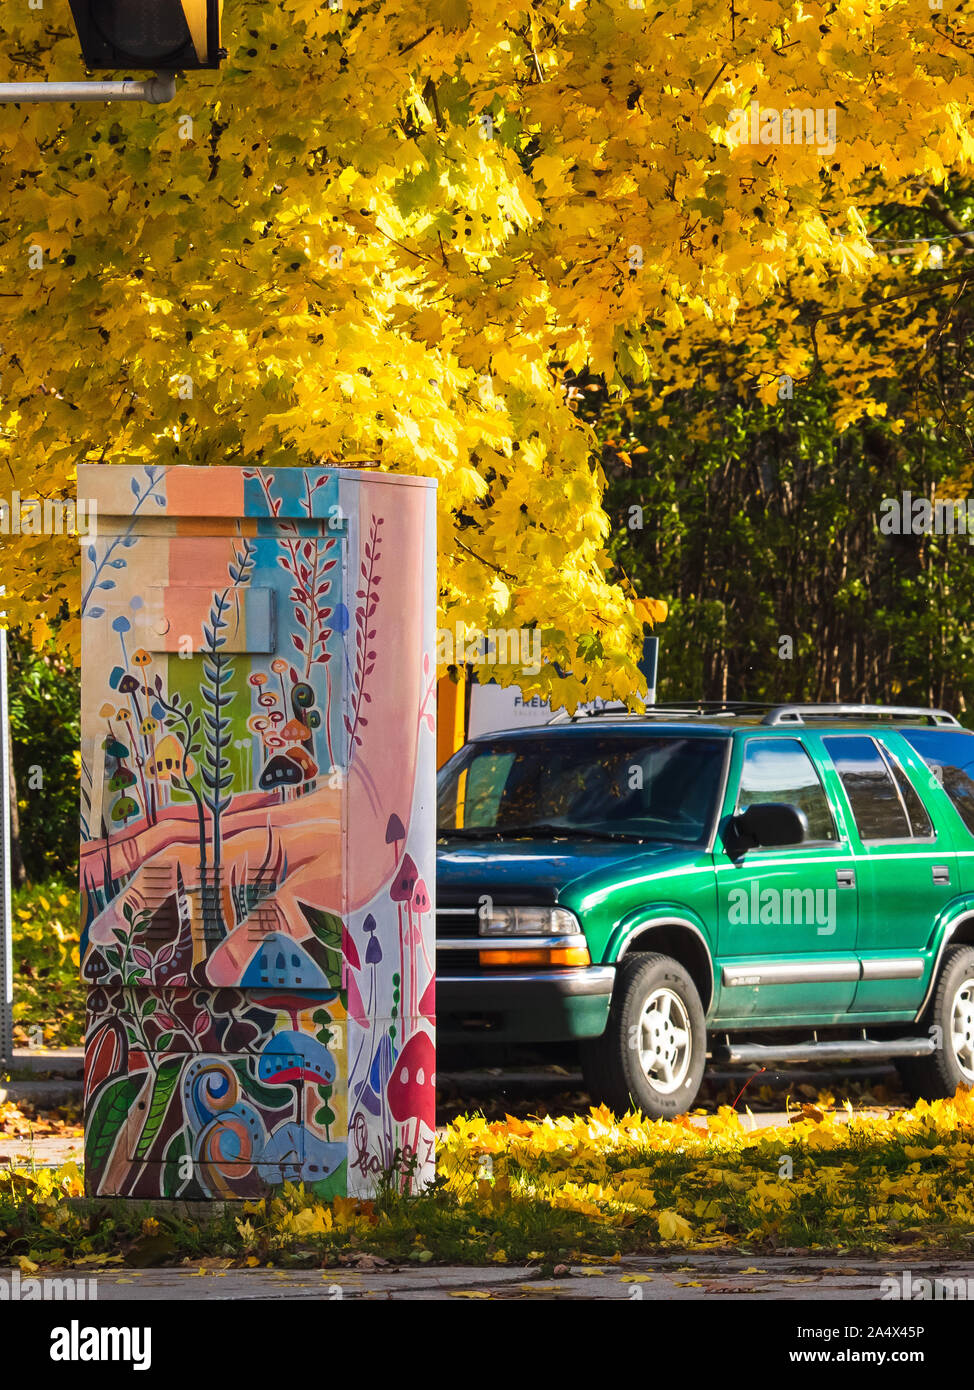 Eine bunte traffic signal box Hand mit dem Thema Hand ausgewachsenen Pflanzen gemalt. Im Herbst mit gelben Blatt ahorn Baum über es erschossen. Stockfoto